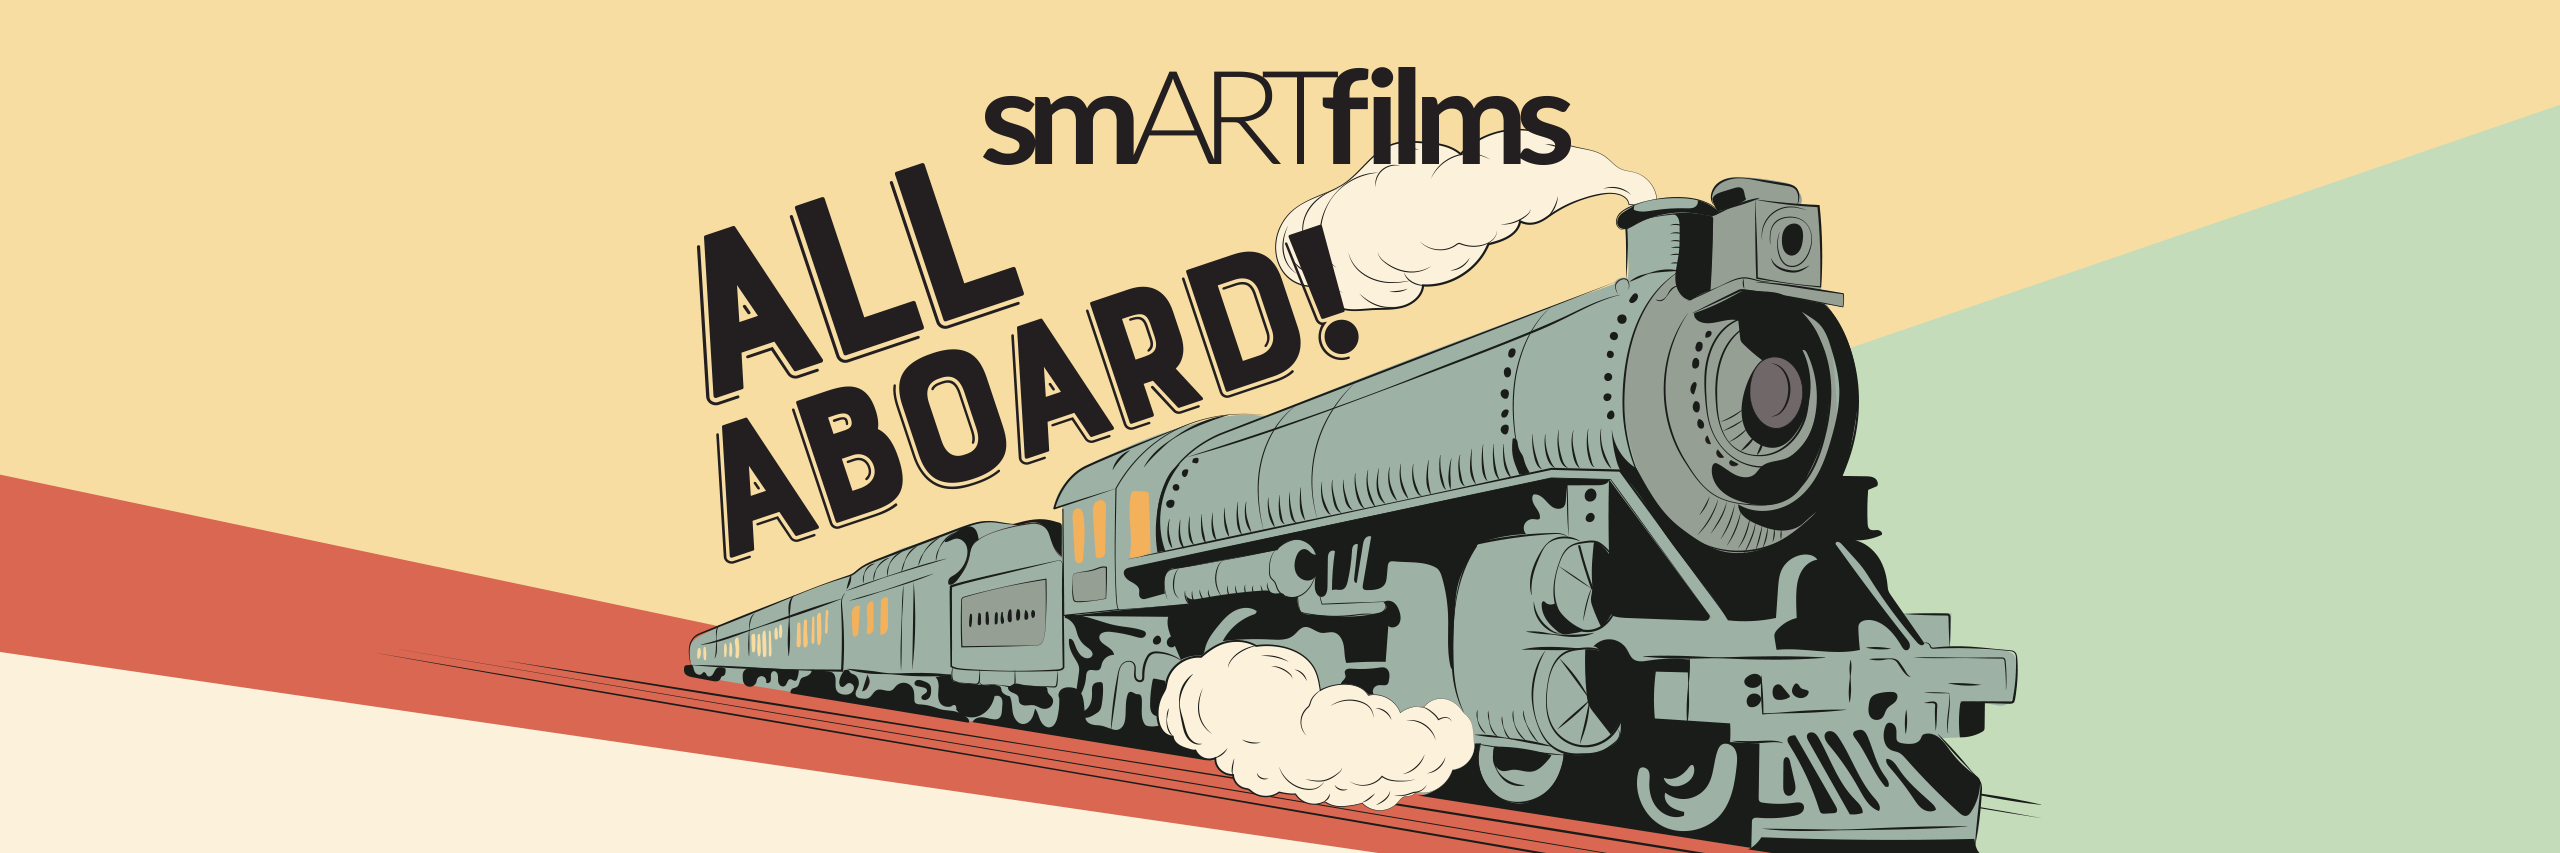 smARTfilms All Aboard series